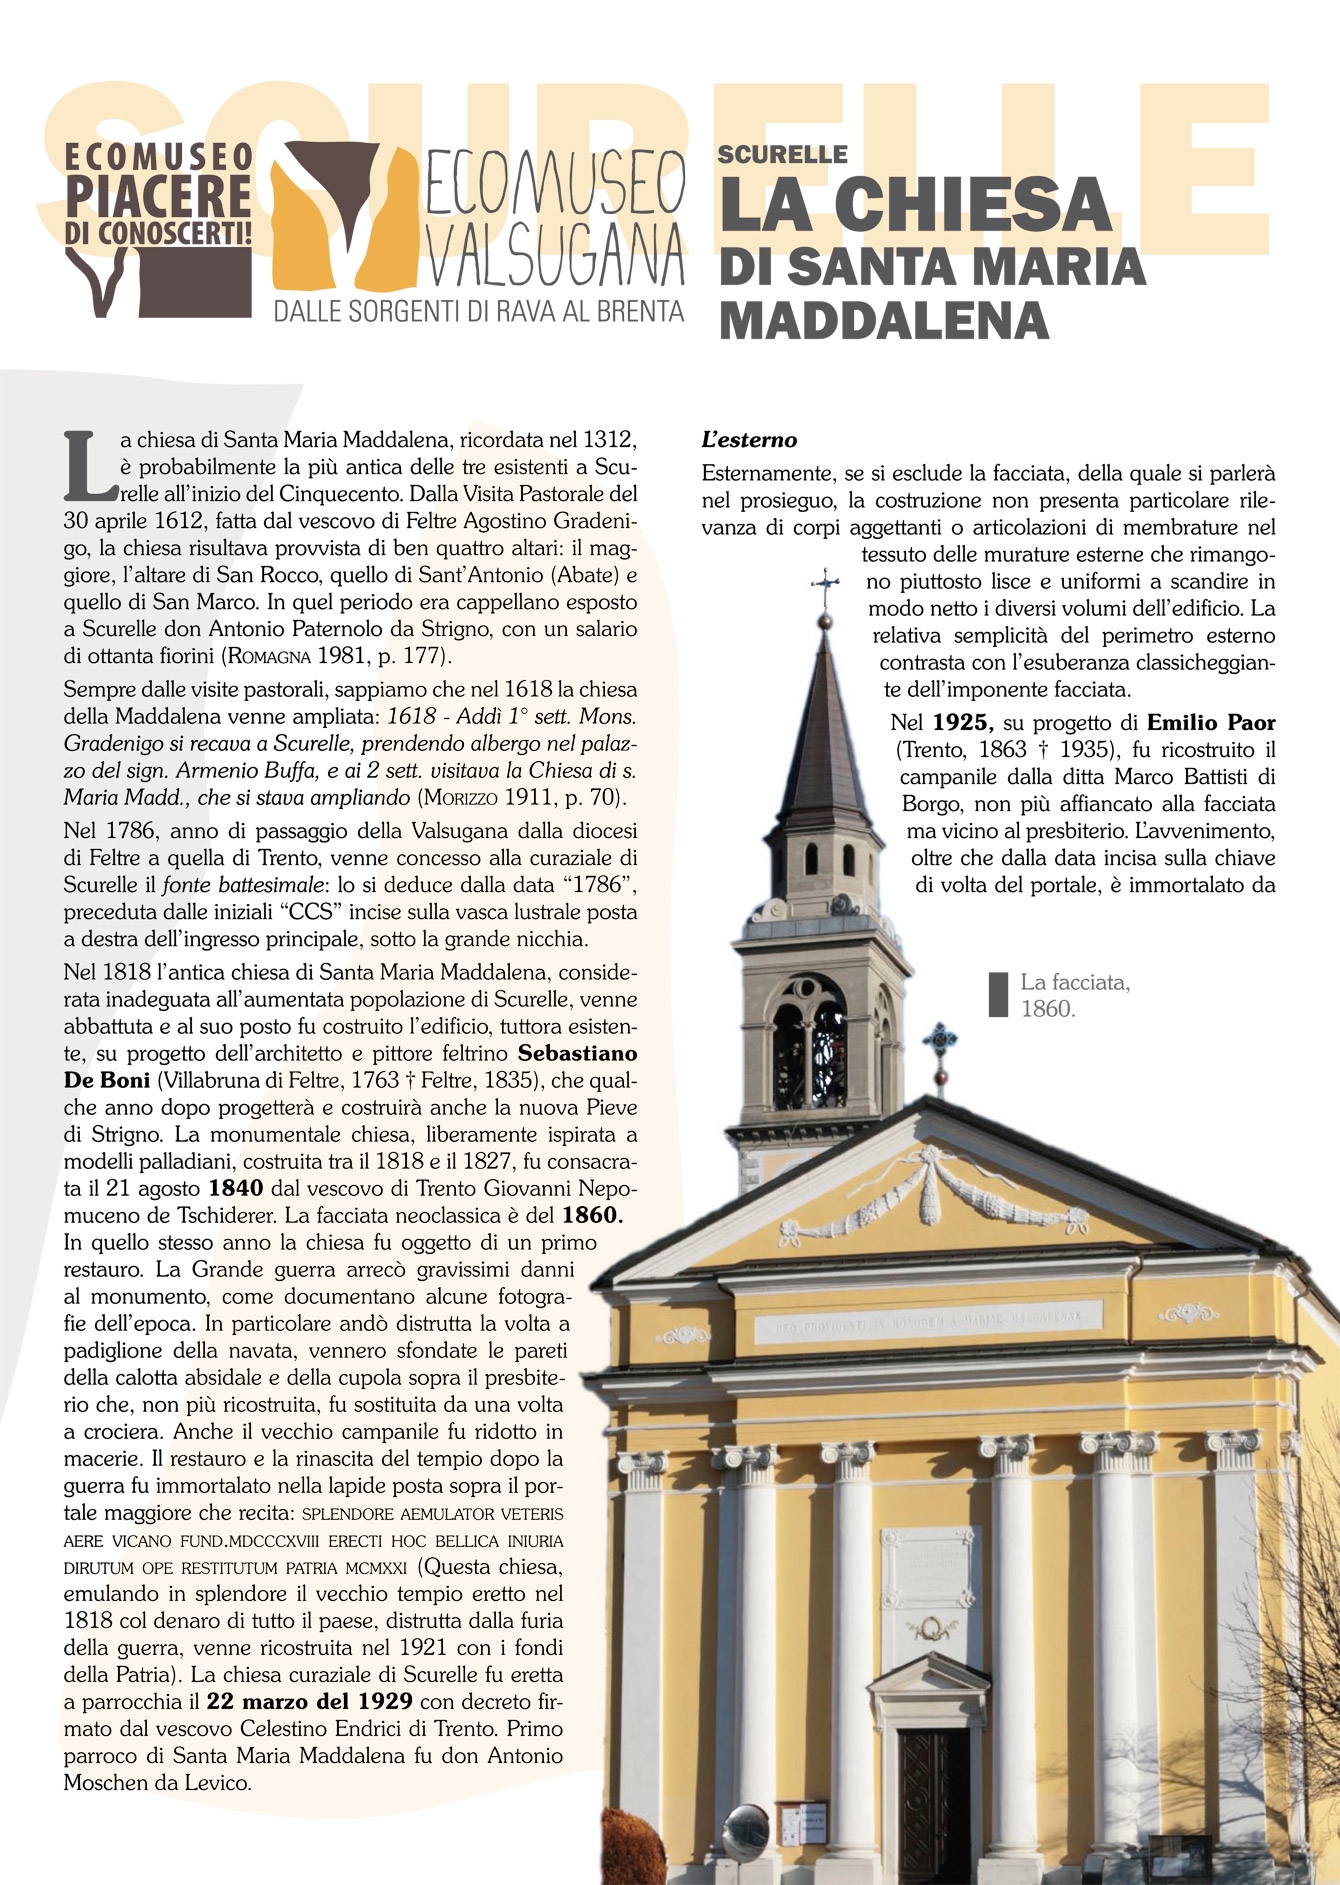 Scurelle: la chiesa di Santa Maria Maddalena